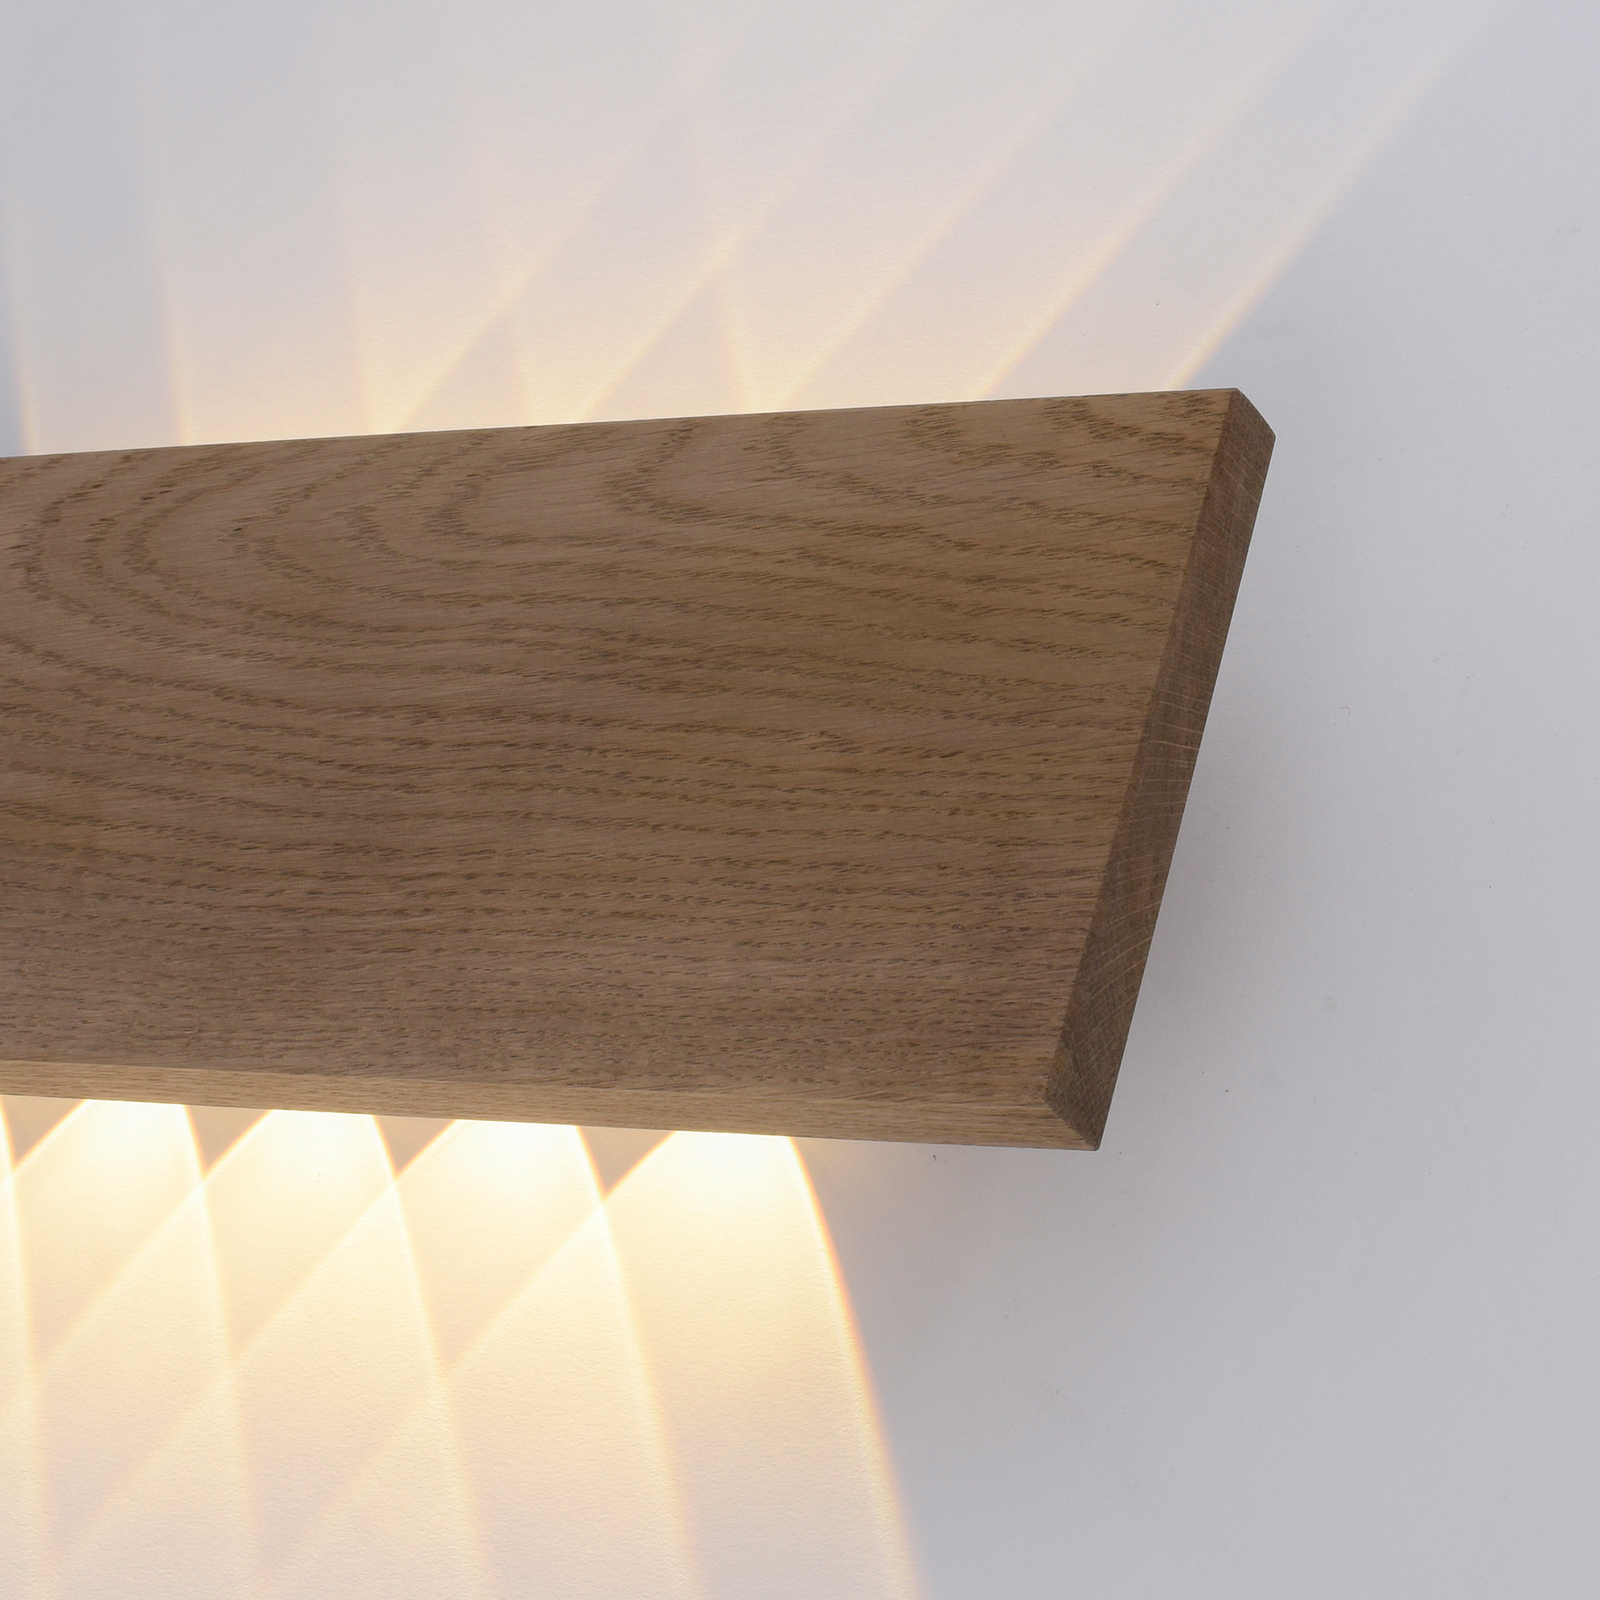 Paul Neuhaus Palma LED wandlamp hout 45 cm